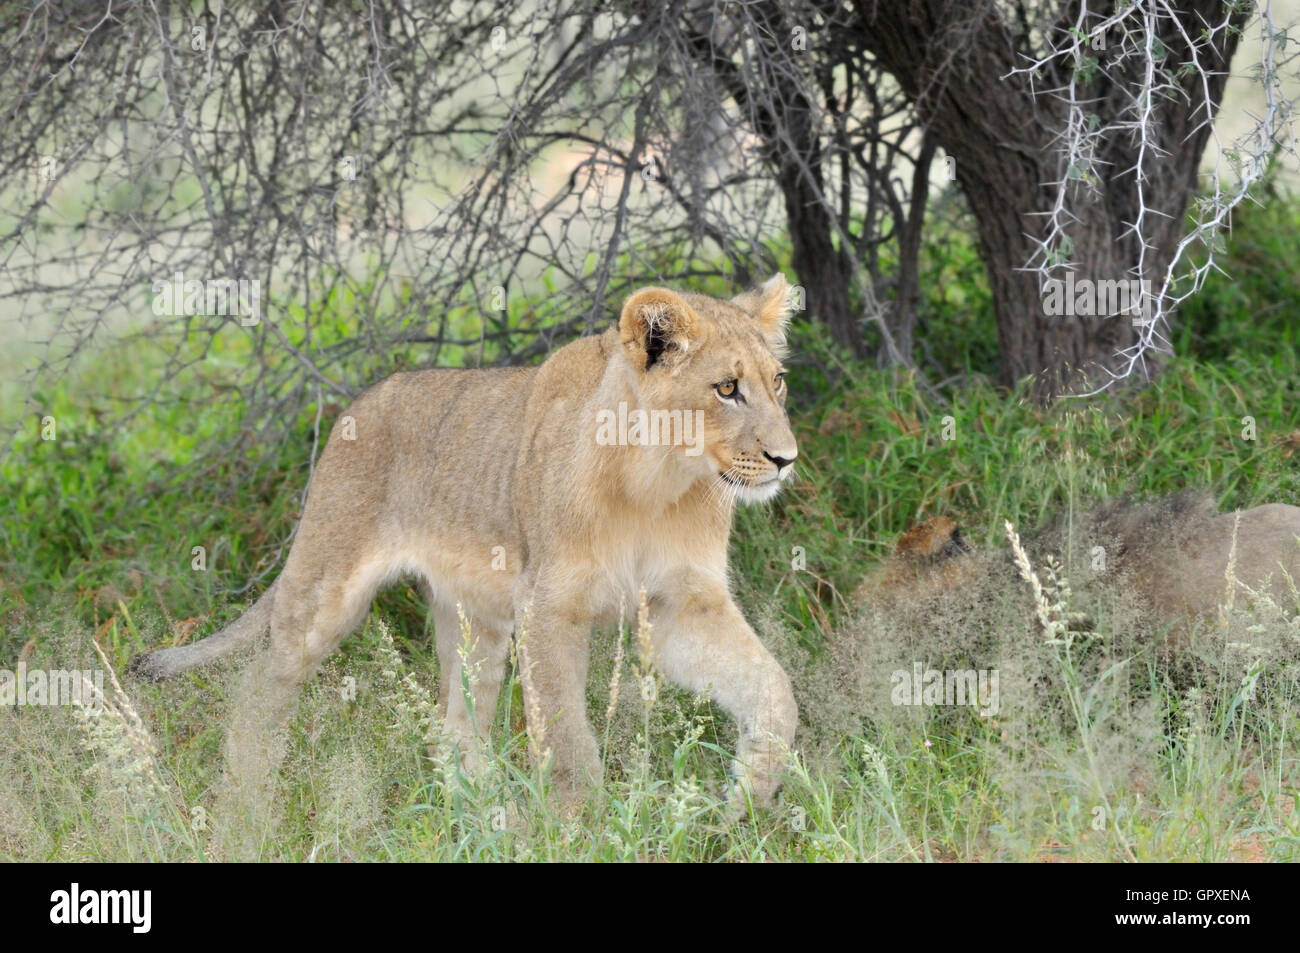 Young lion in the Kalahari Stock Photo